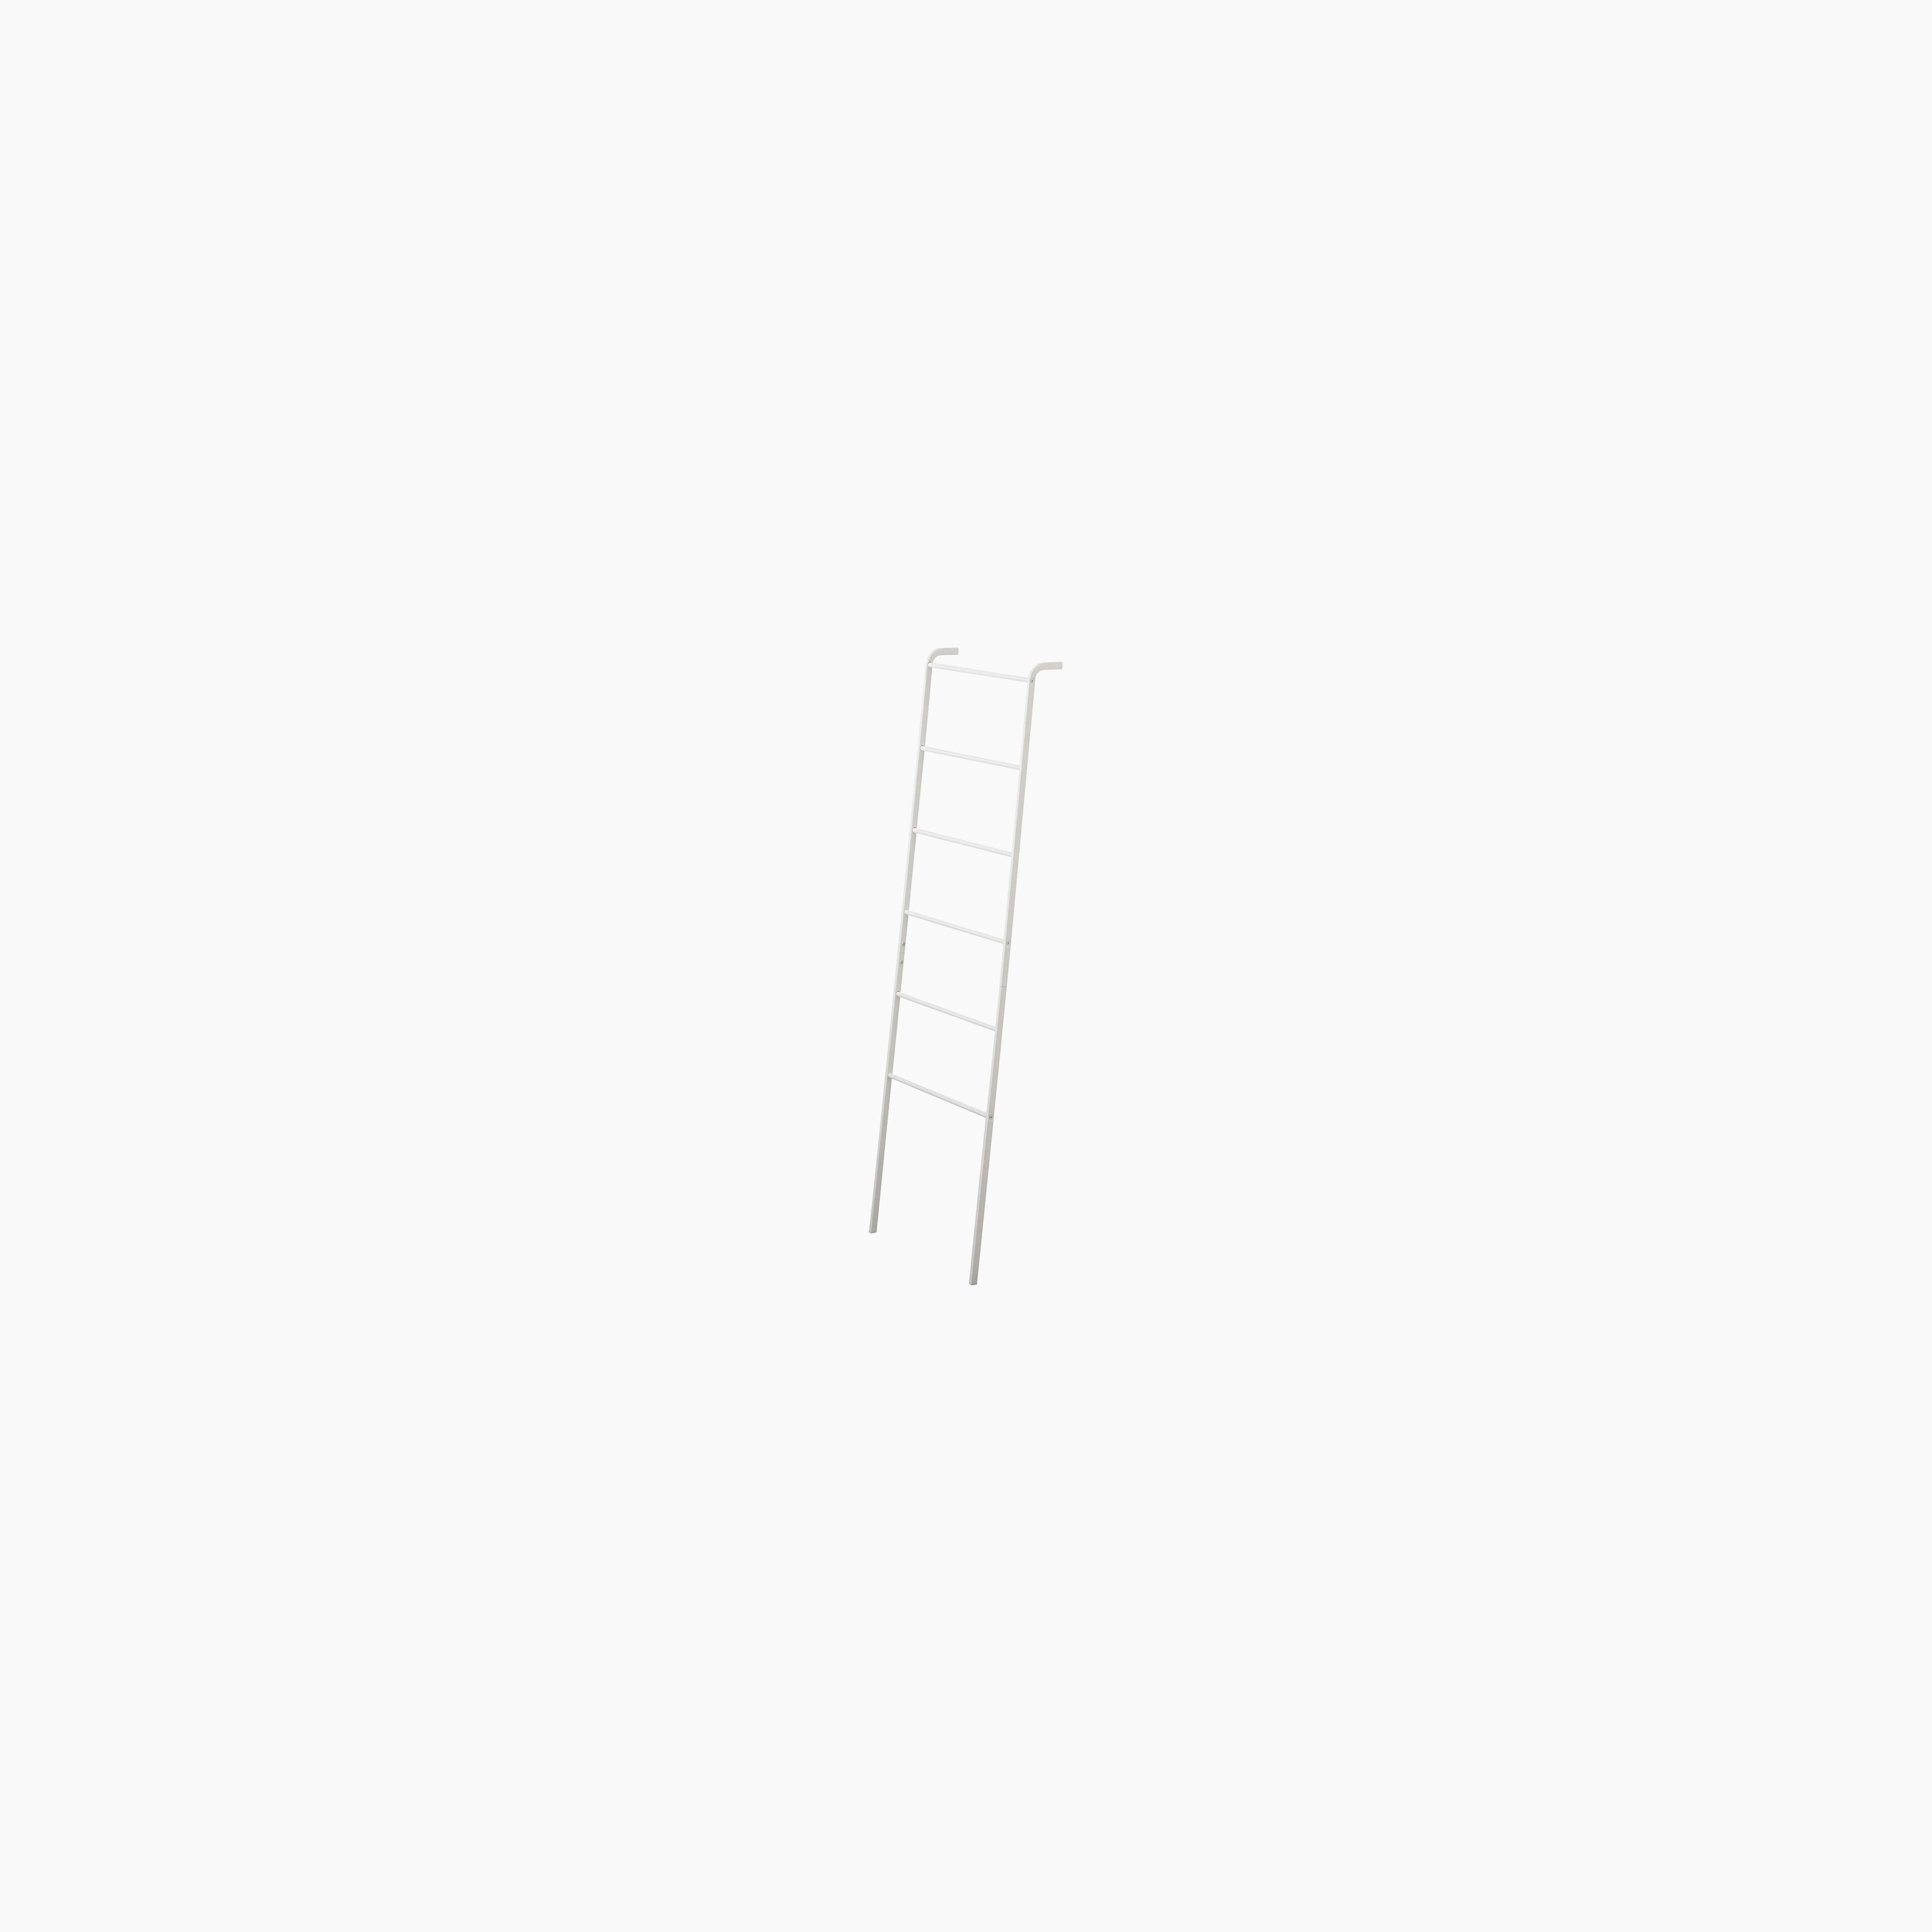 Leaning Storage Ladder (63" H)  - Steel